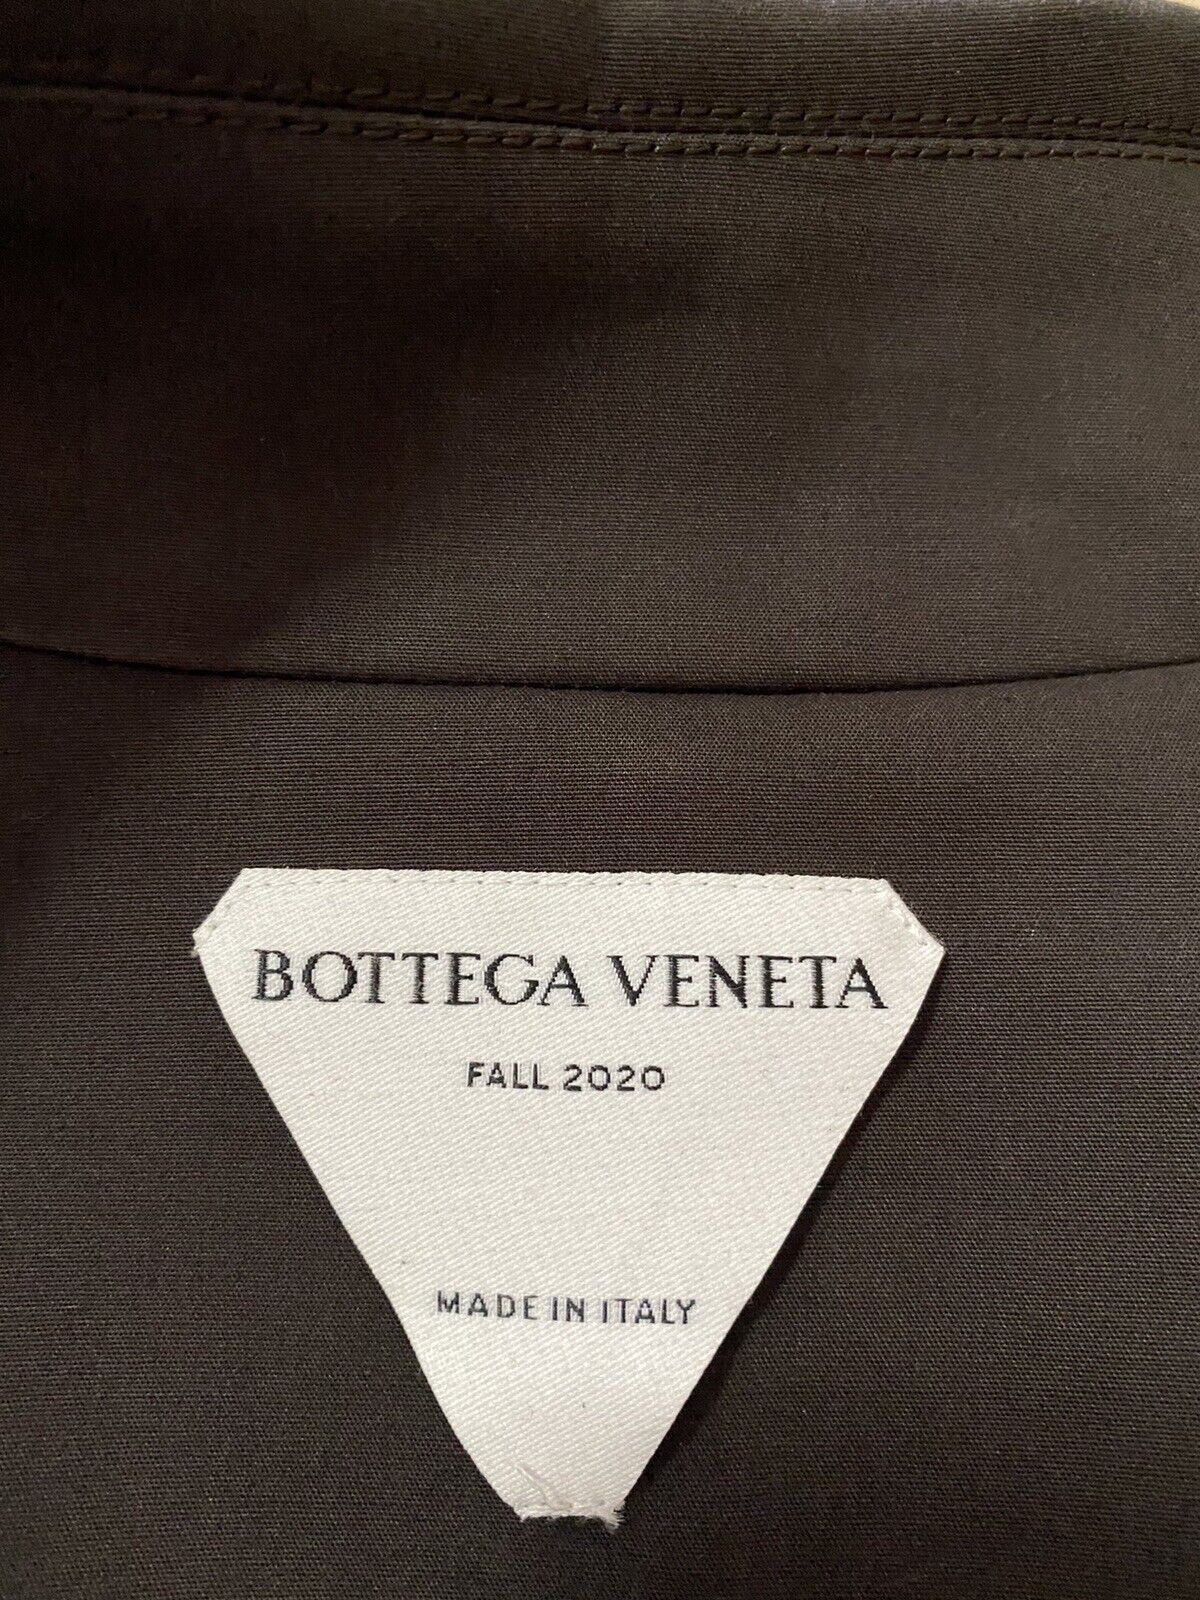 Neu $2650 Bottega Veneta Herren-Trenchcoat aus wasserdichter Baumwolle DK Braun 46 US/56 EU